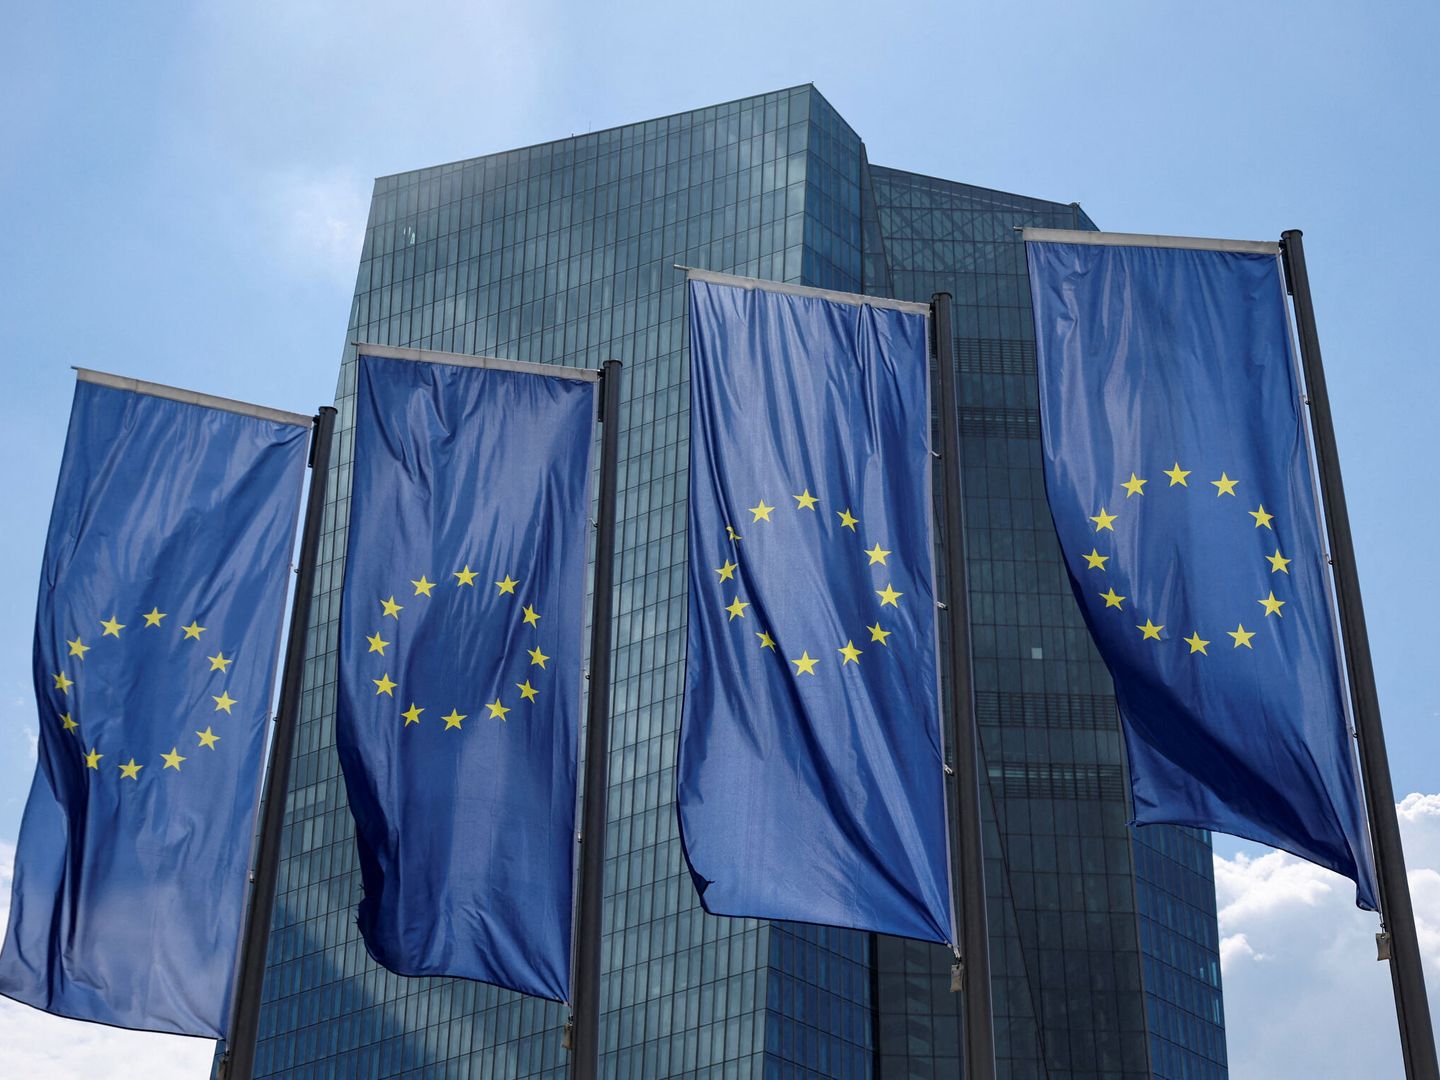 Sede del Banco Central Europeo en Frankfurt. (Reuters)